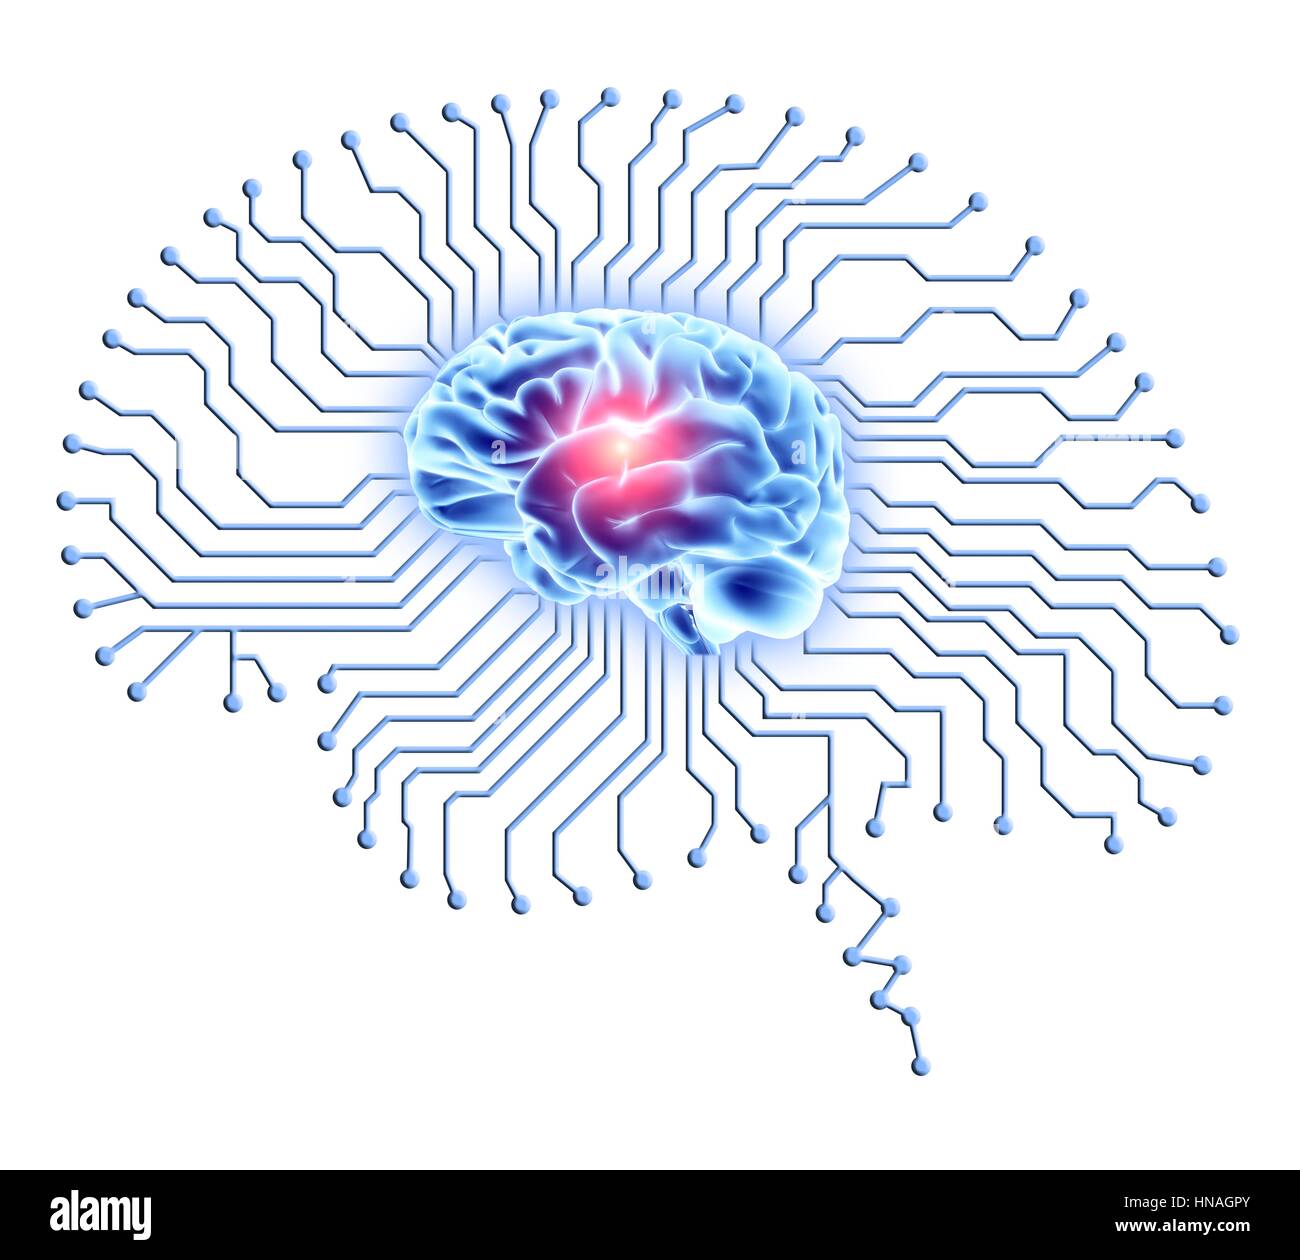 Cervello umano sul cervello a forma di scheda a circuito stampato. Calcolatore concettuale artwork raffigurante l'intelligenza artificiale. Foto Stock